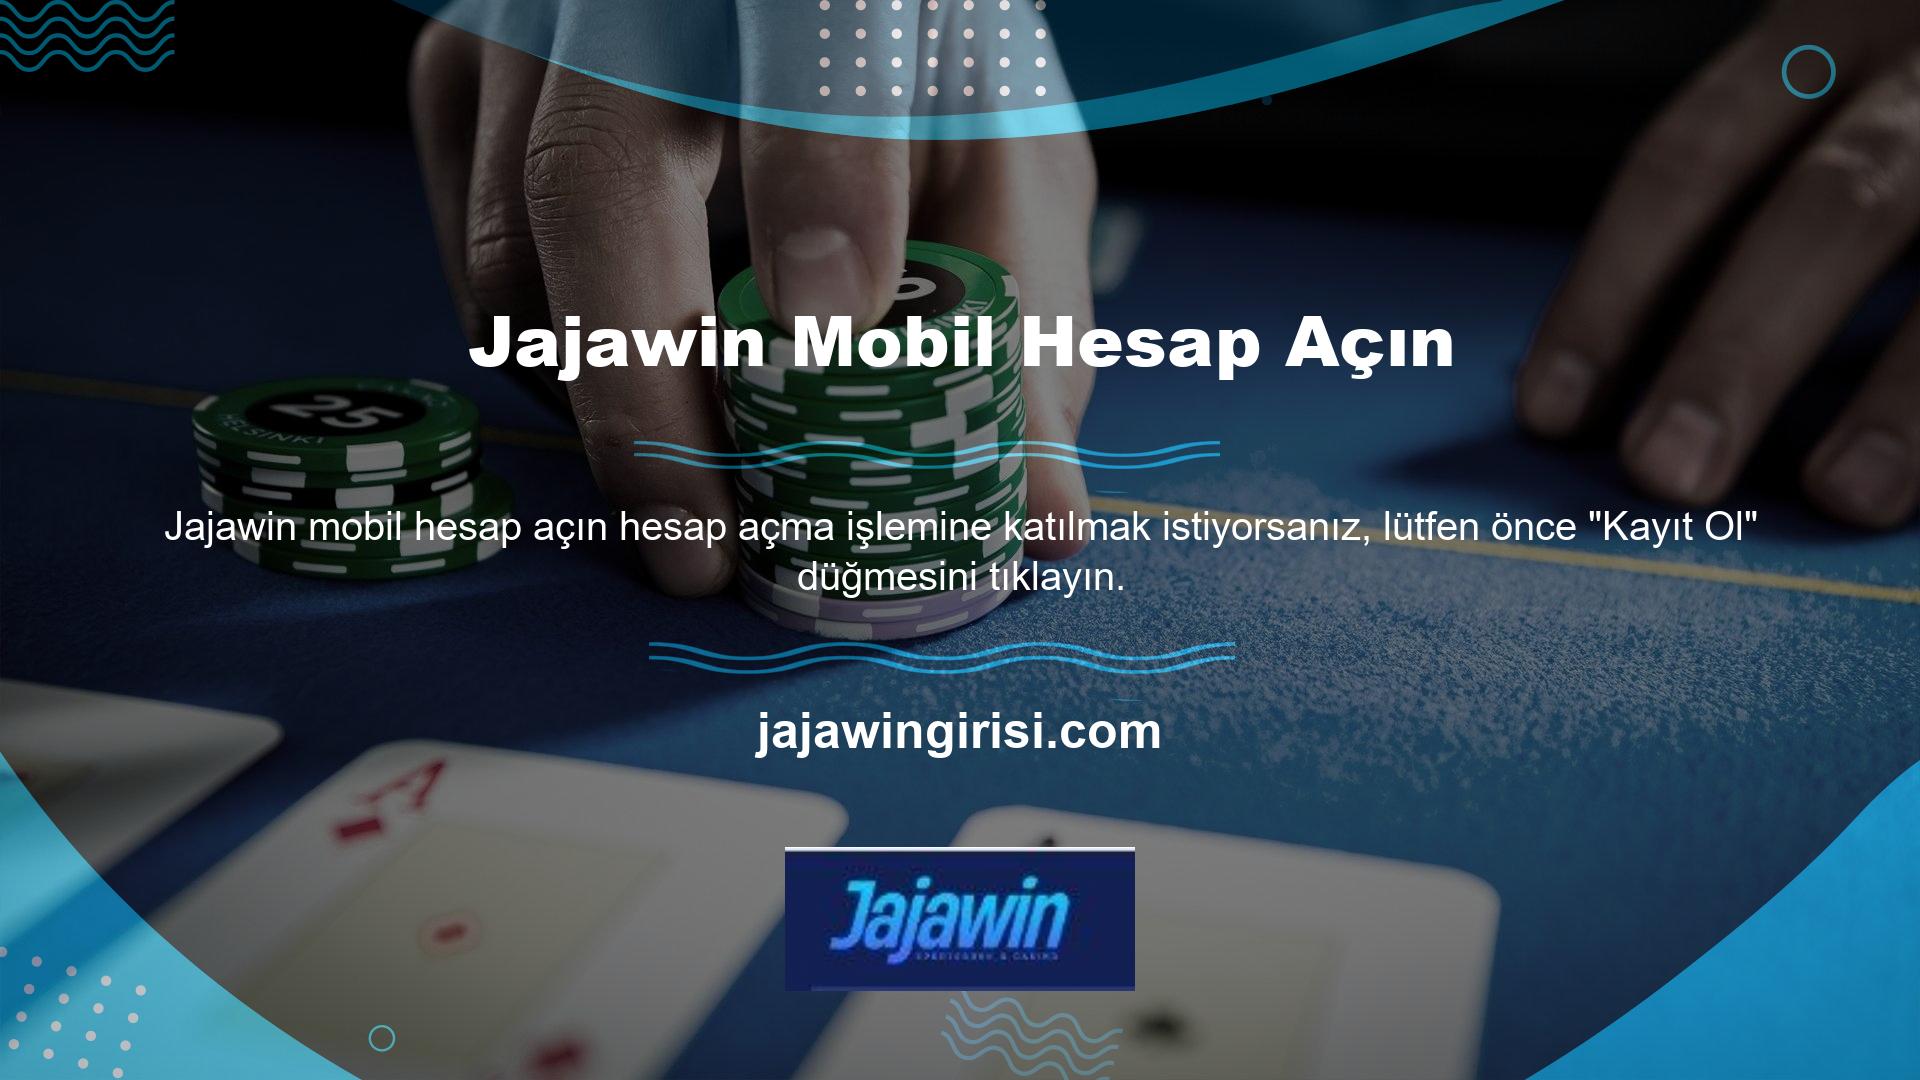 Daha sonra Jajawin mobil hesap kayıt işlemini tamamlayabilirsiniz